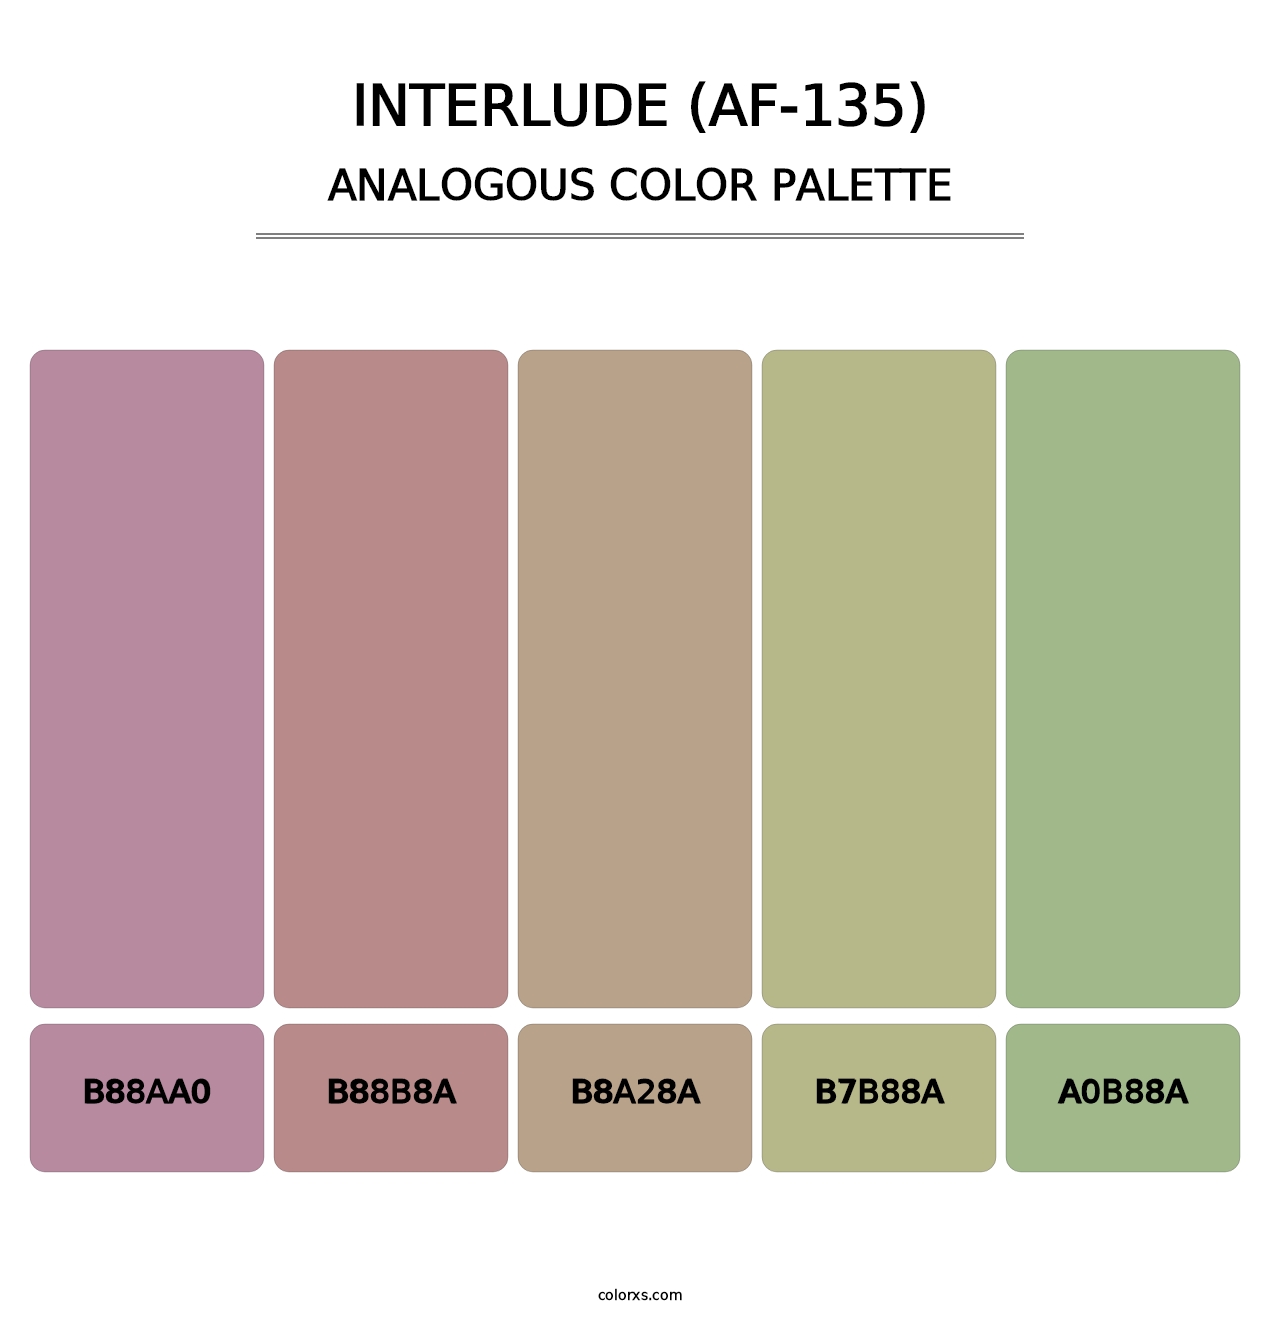 Interlude (AF-135) - Analogous Color Palette